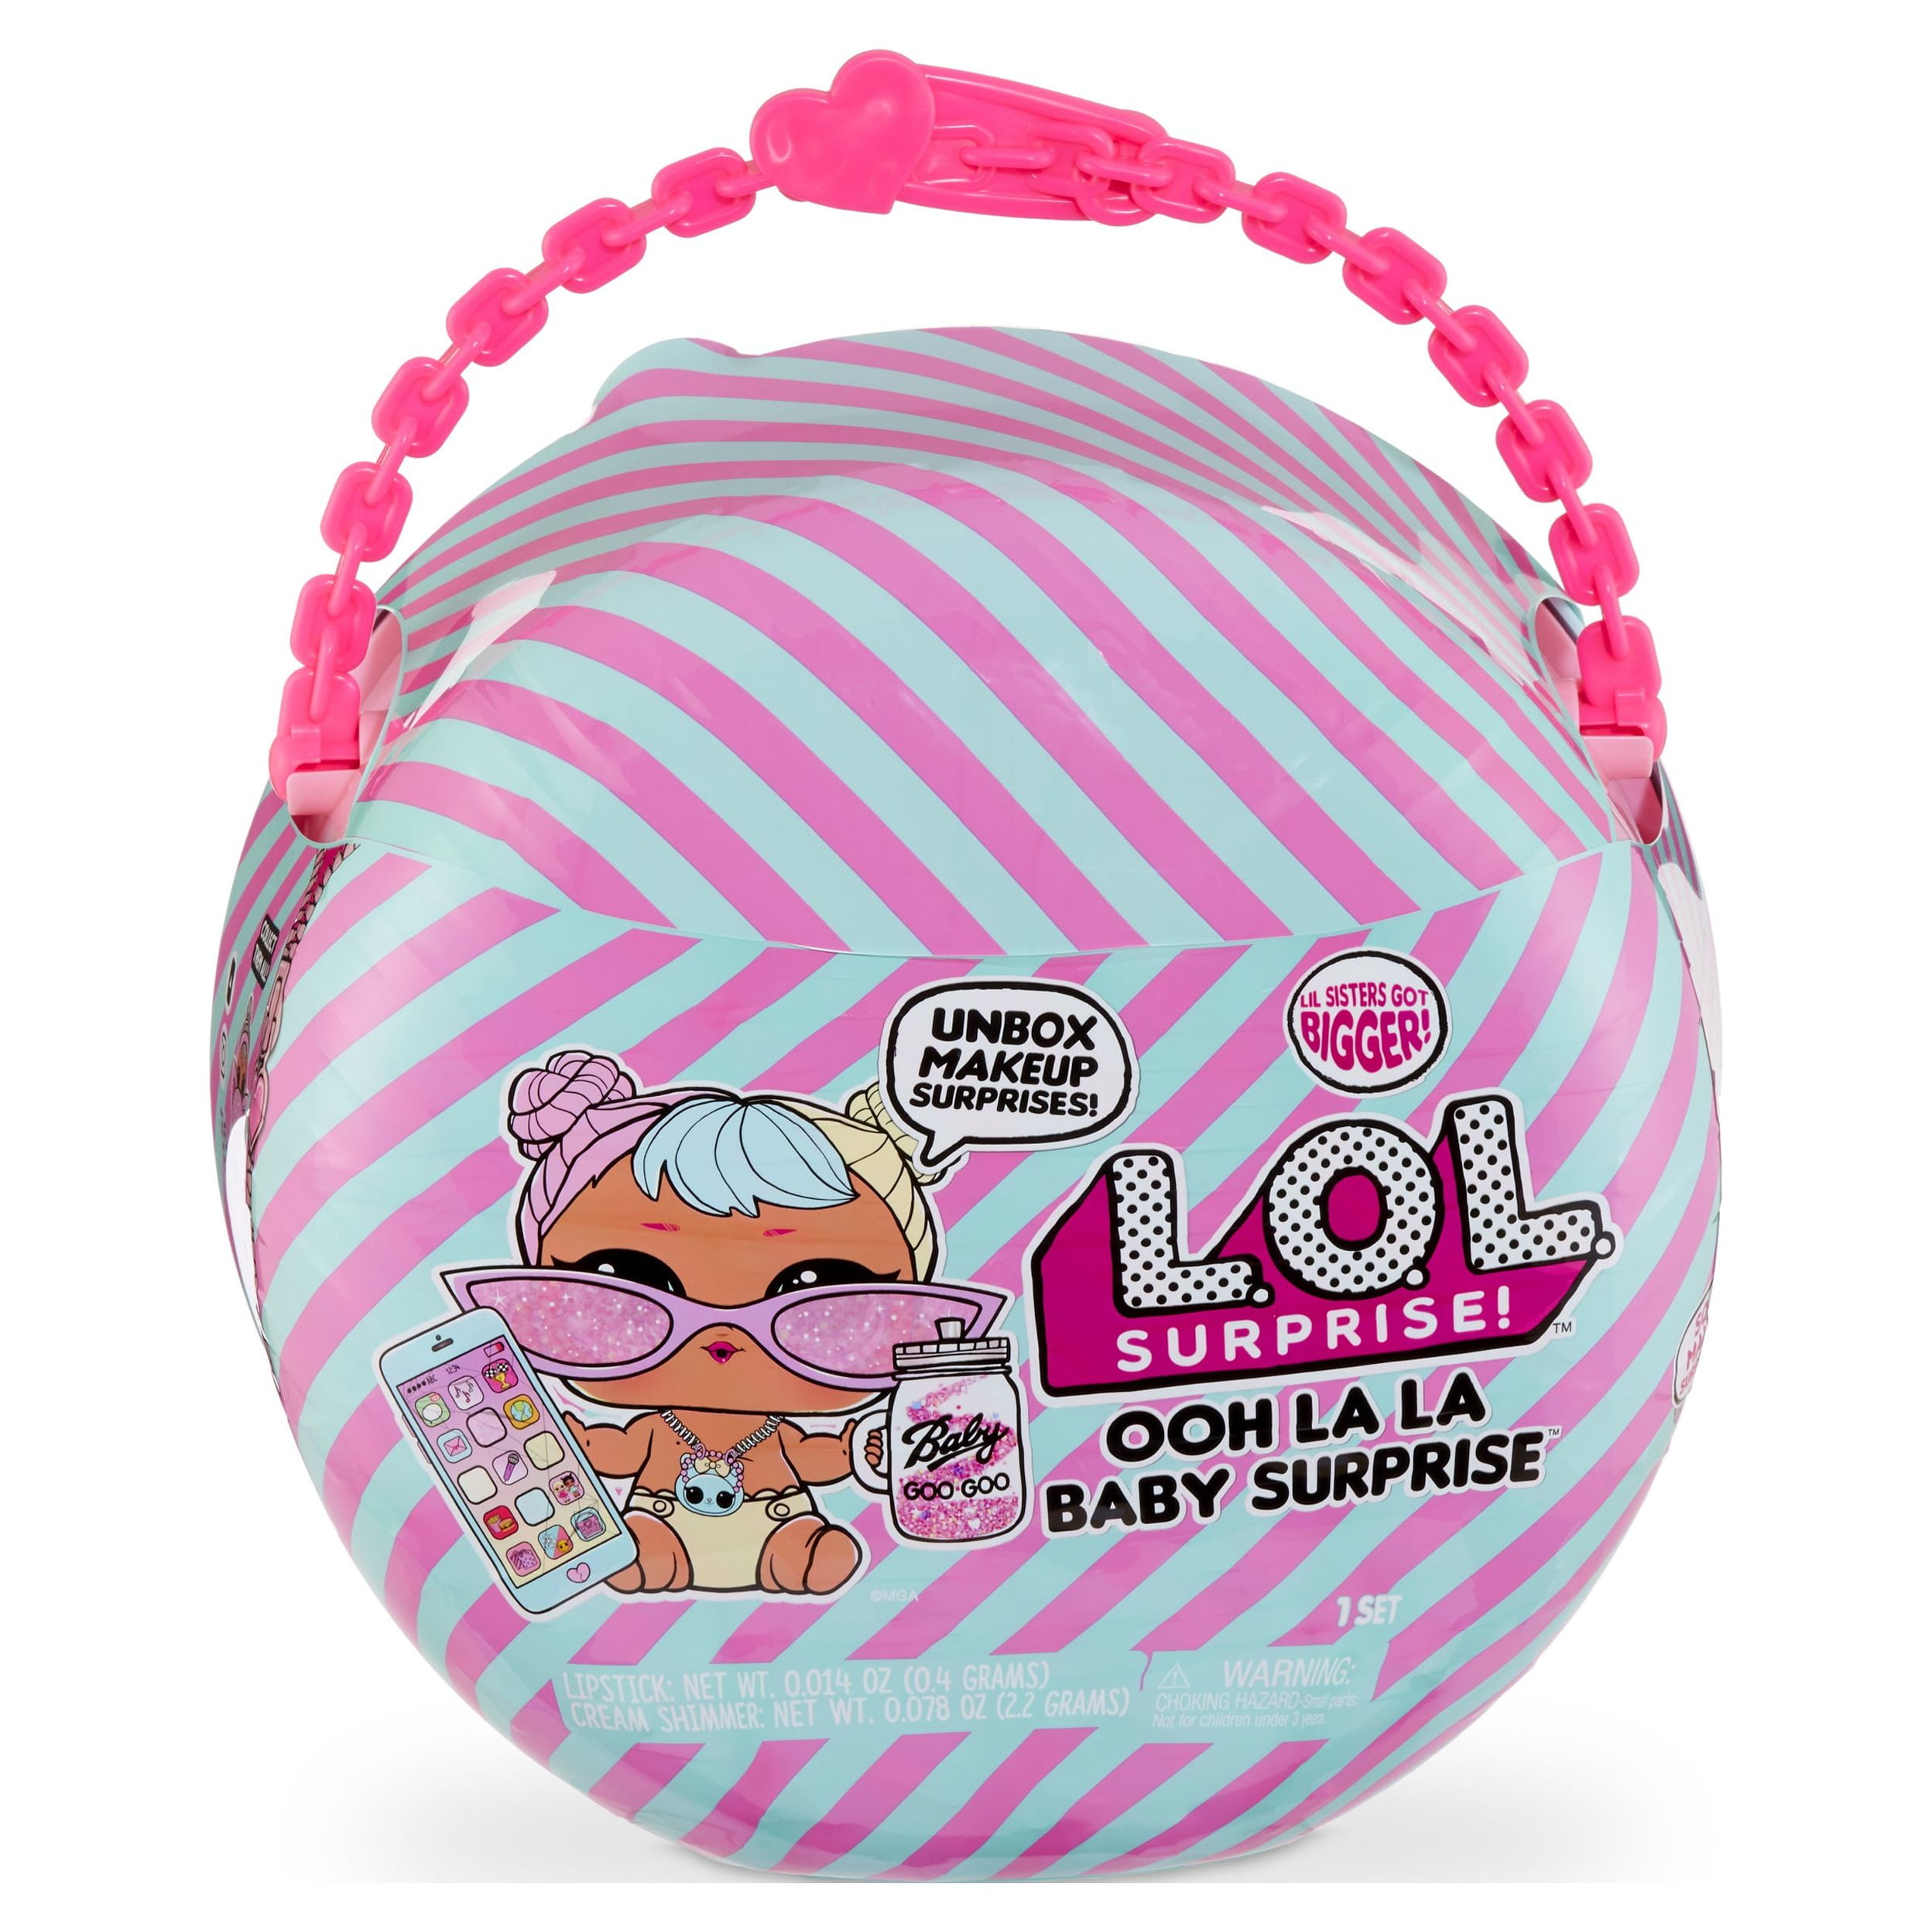 Best Buy: L.O.L. Surprise! L.O.L. Surprise Big B.B.Doll- Bon Bon